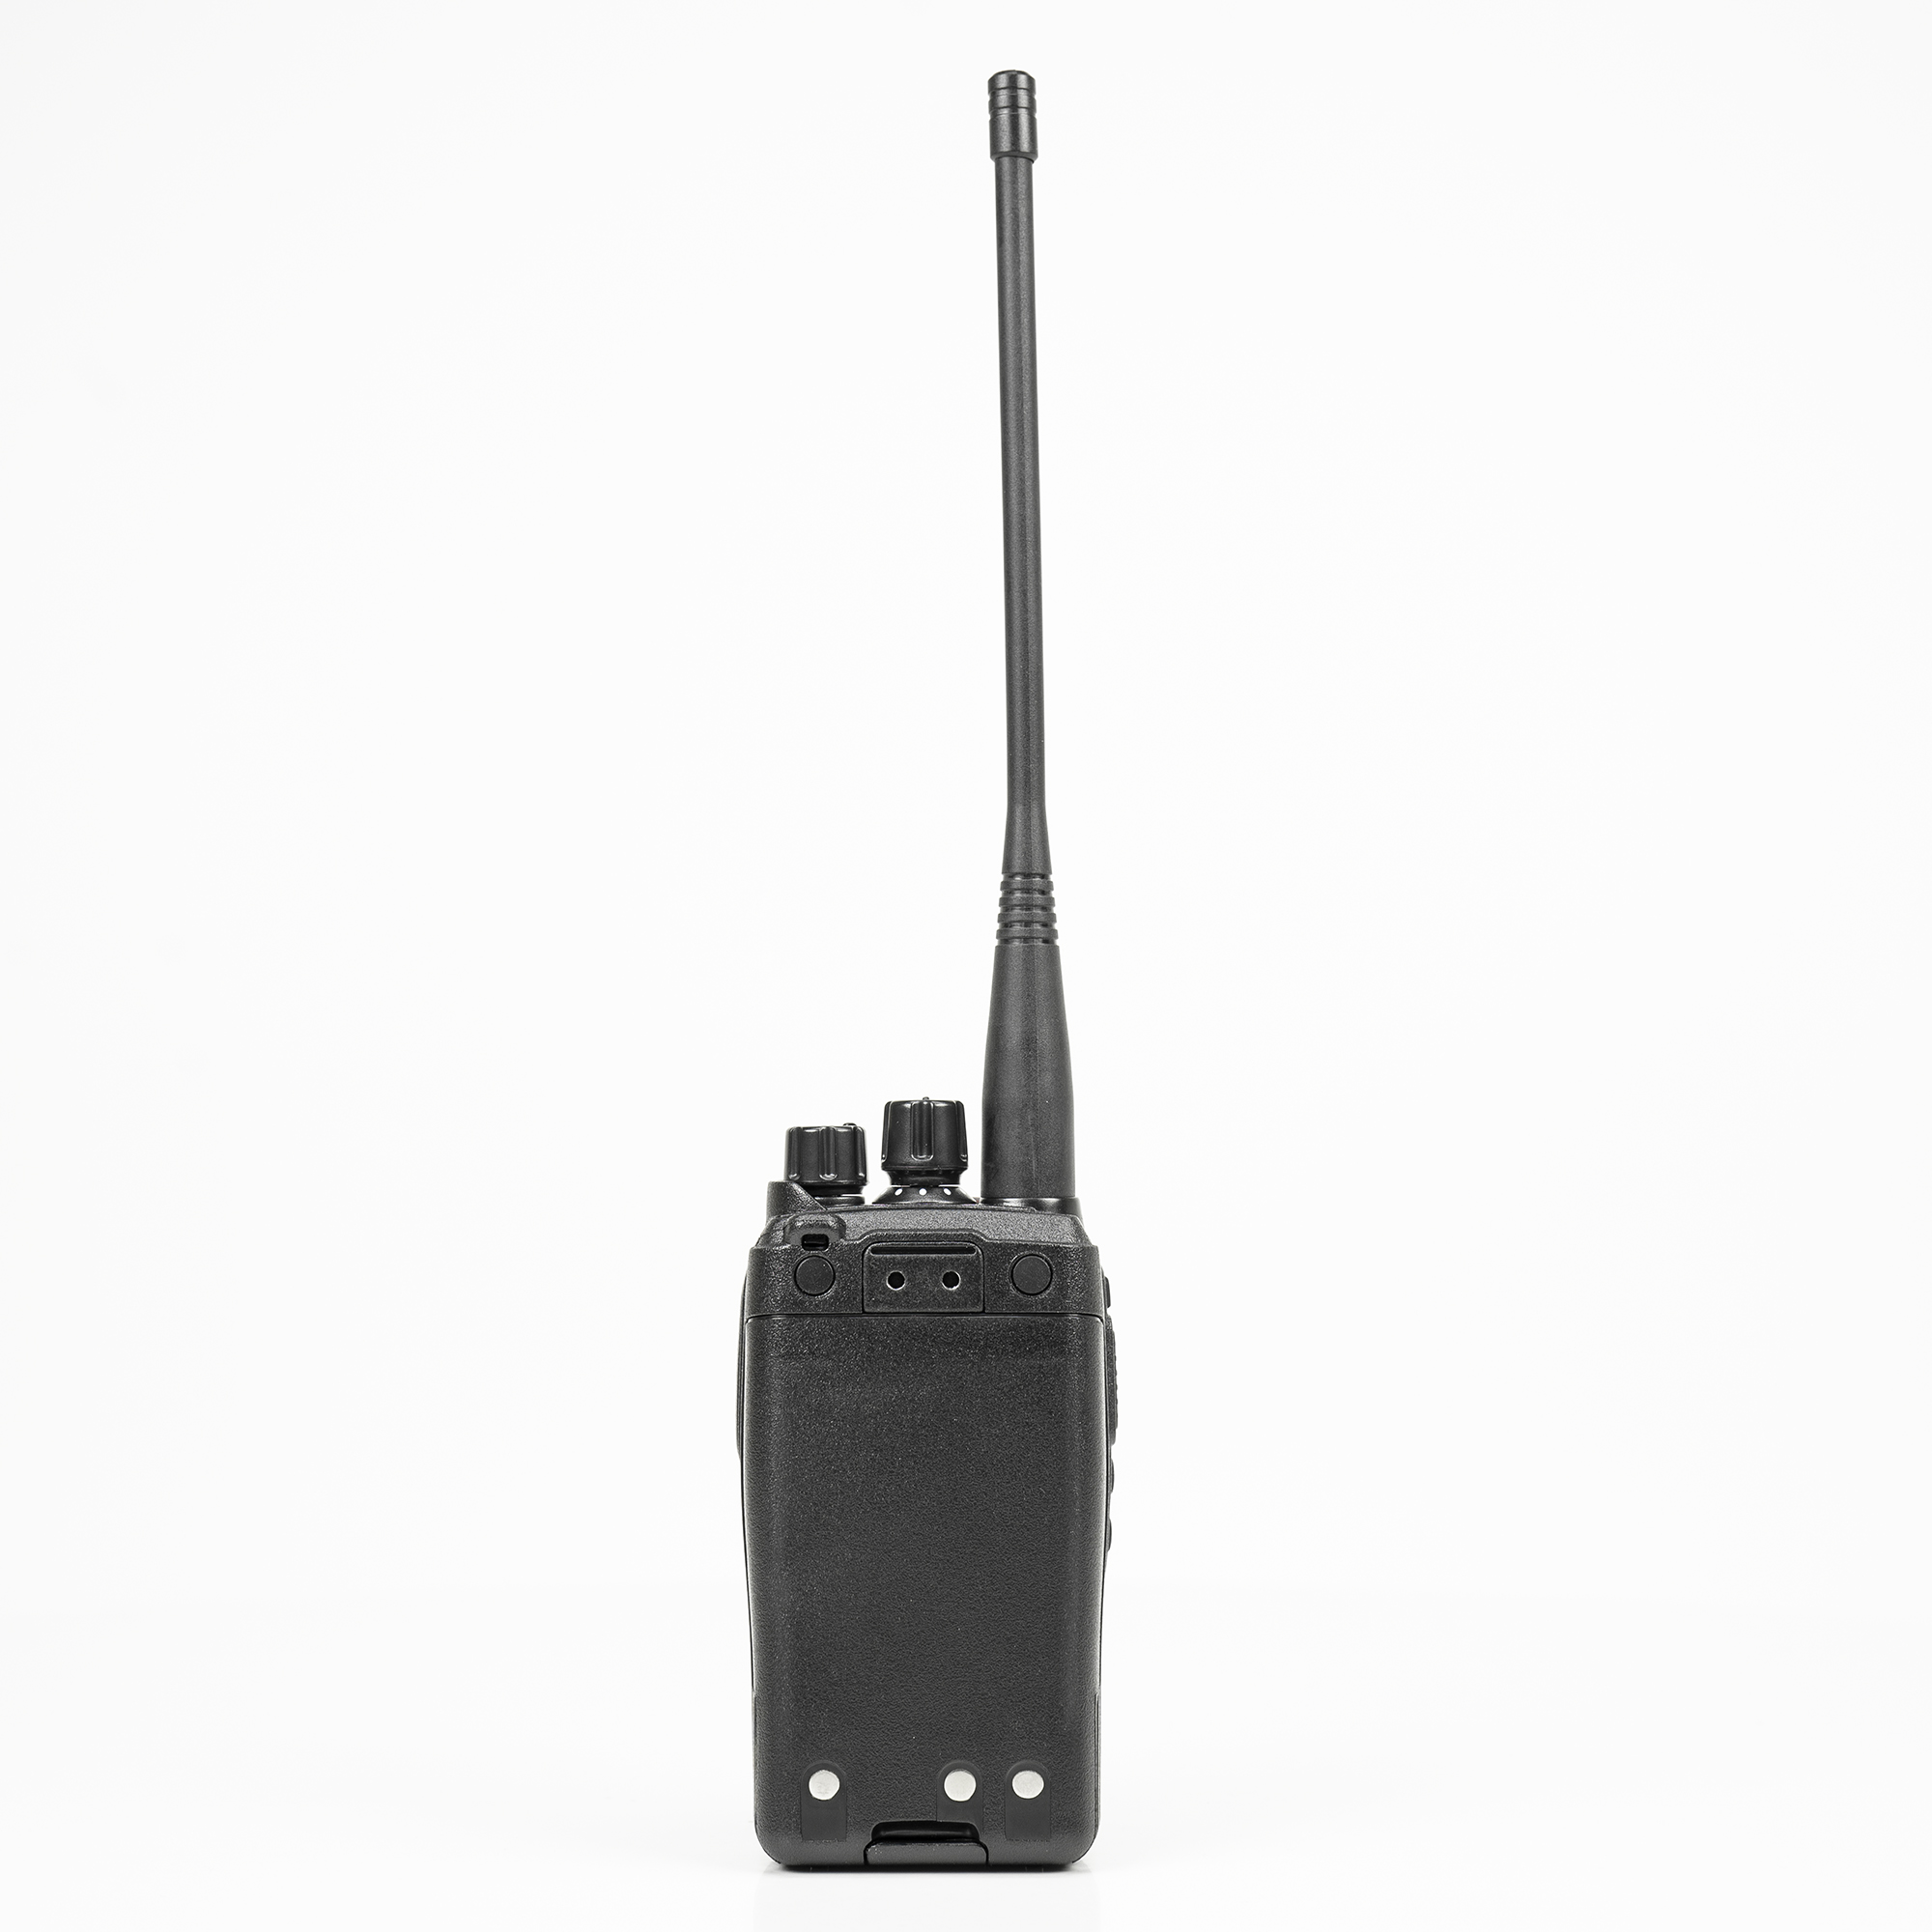 Statie radio portabila VHF PNI Dynascan V-600, 136-174 MHz, IP67, Scan, Scrambler, VOX image1